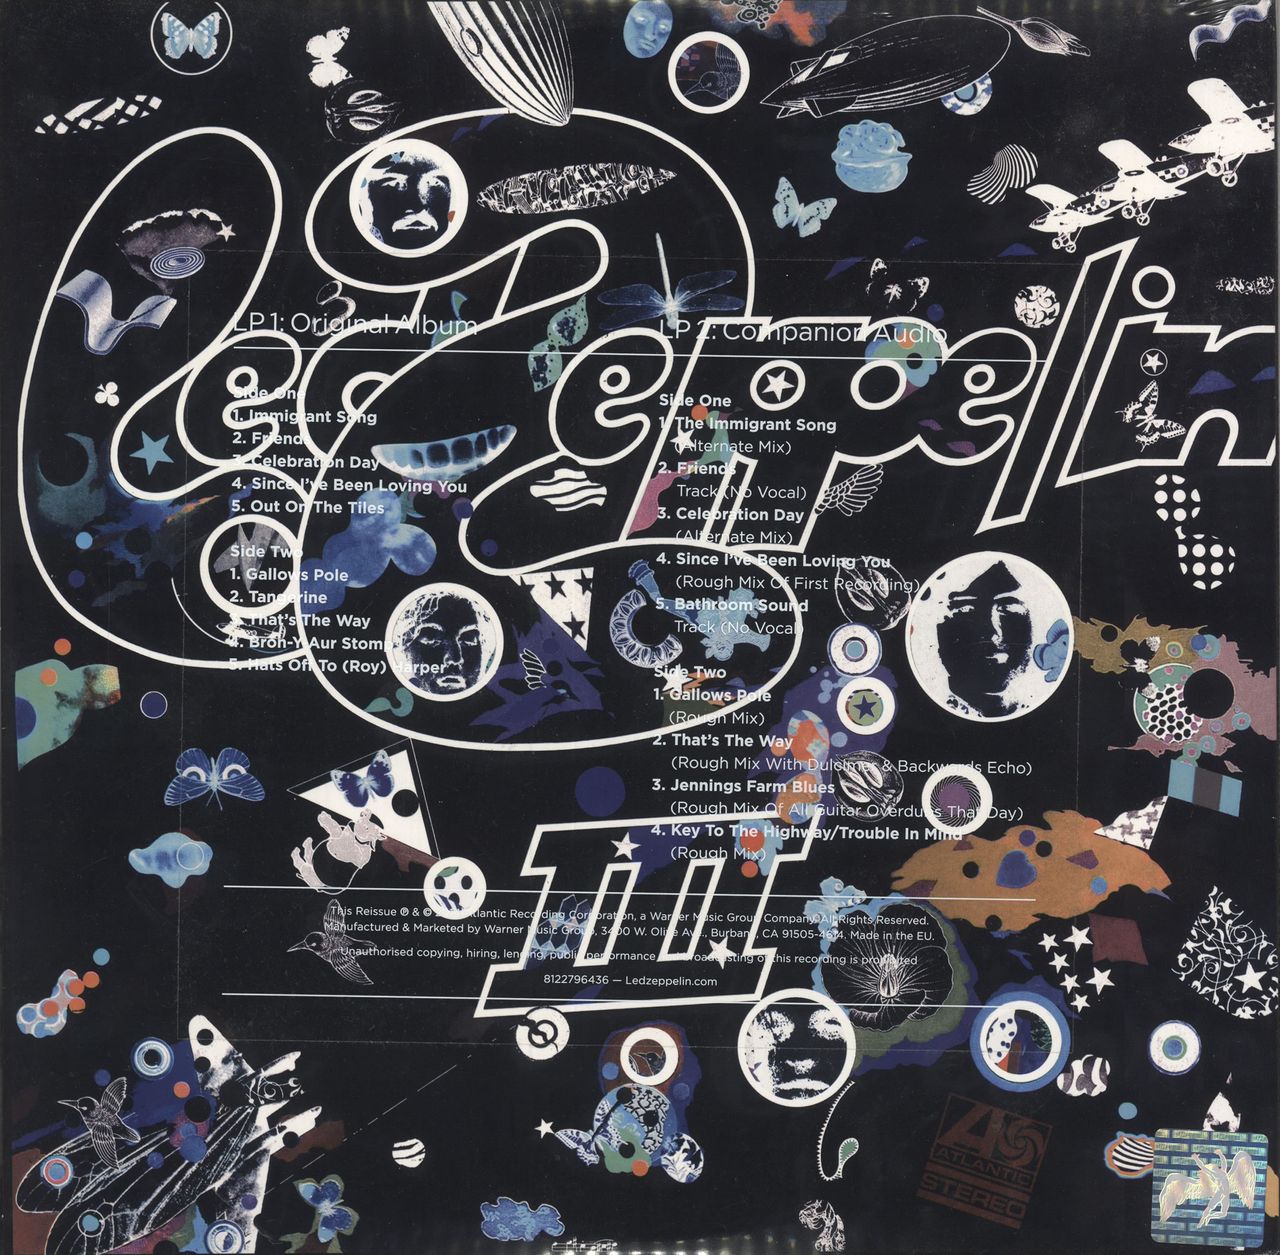 Led Zeppelin Led Zeppelin III - Deluxe Edition 180 Gram - Sealed UK 2-LP  vinyl set